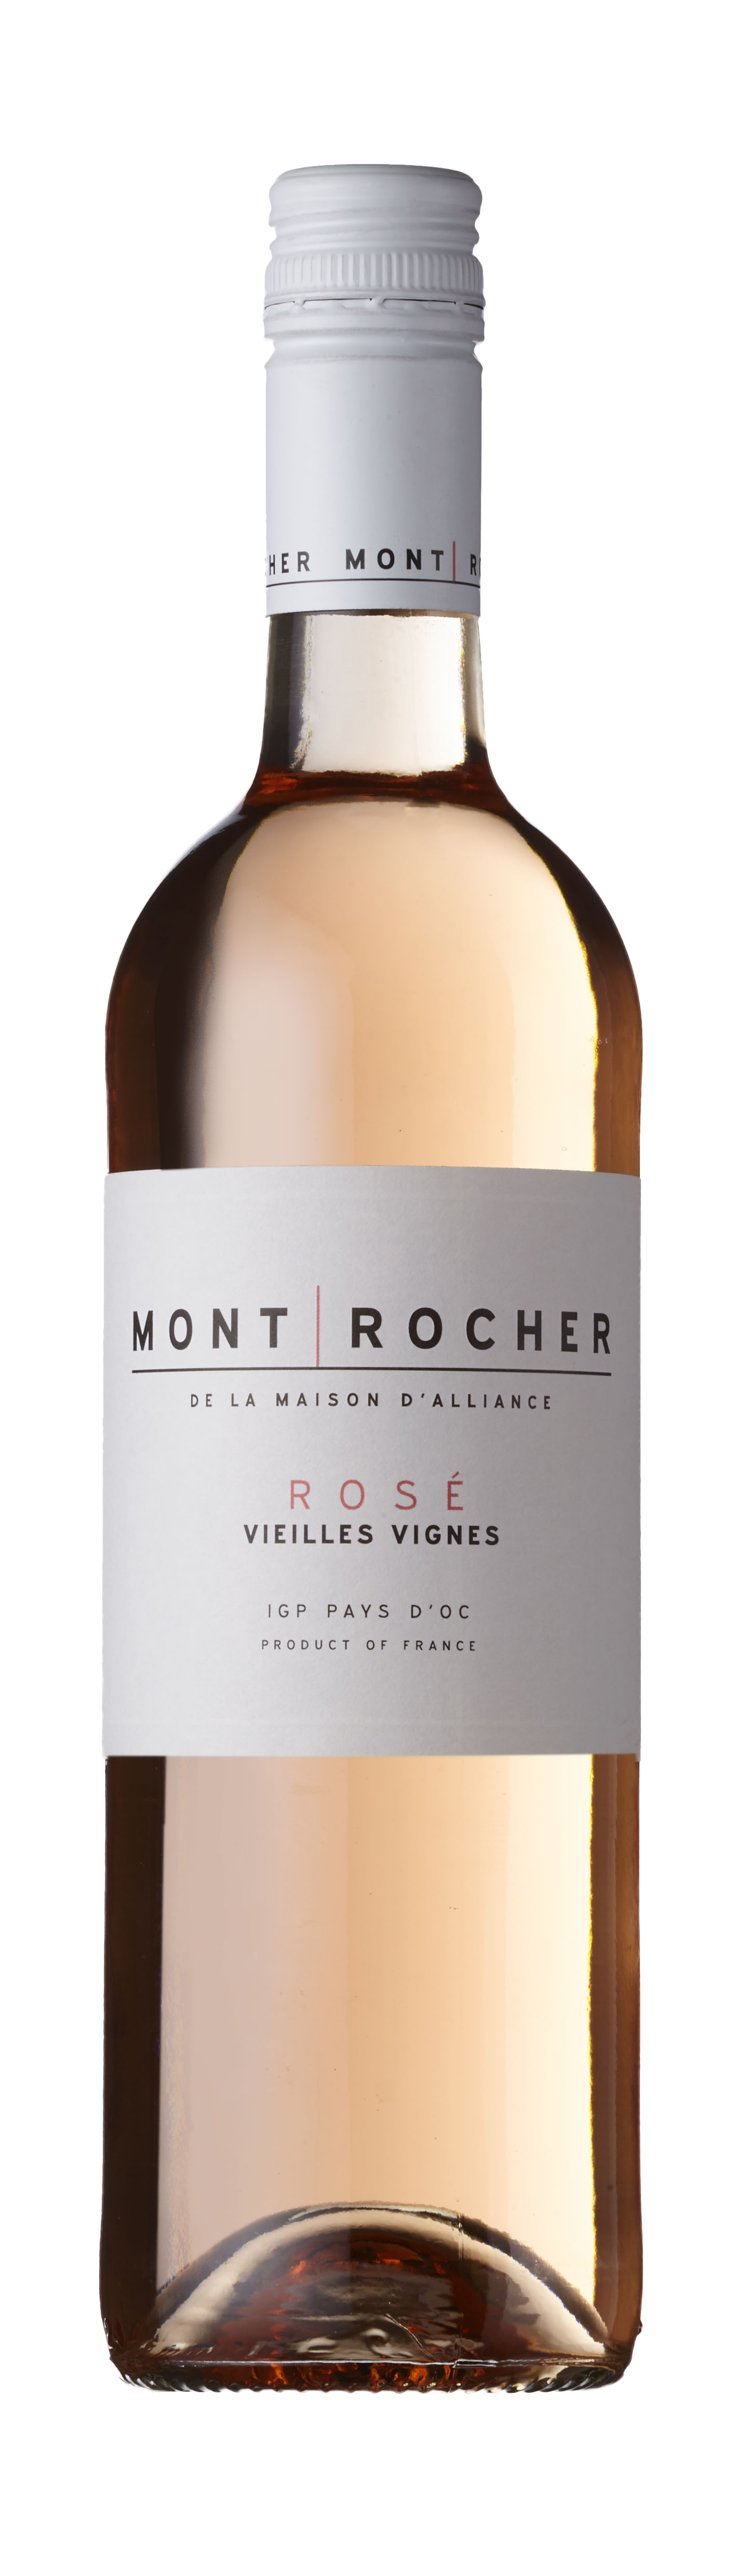 Bottle shot - Mont Rocher Vieilles Vignes Rosé, IGP Pays d'Oc, France